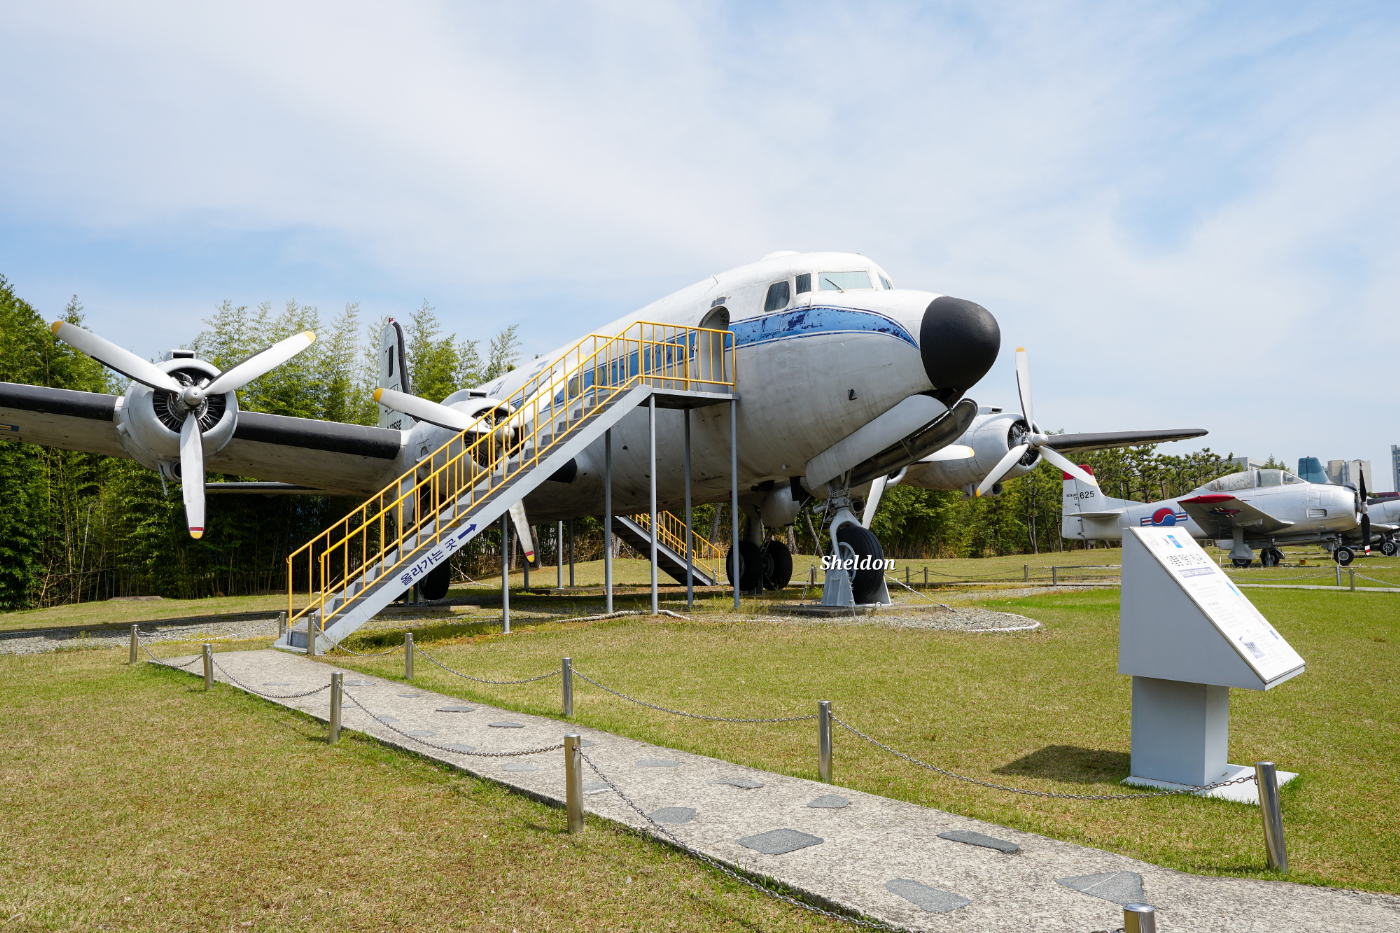 VC-54는 미 공군에서 운용하던 수송기를 제공받아 개조한 기체이다. 국내 최초로 도입되었던 대통령 전용기였으며, 1973년까지 운용되었다. 이후로는 1991년까지 각국에서 귀빈 방문시 공수임무를 수행하다가 퇴역했으며 1994년 11월 11일에 전시물로 기증되었다.